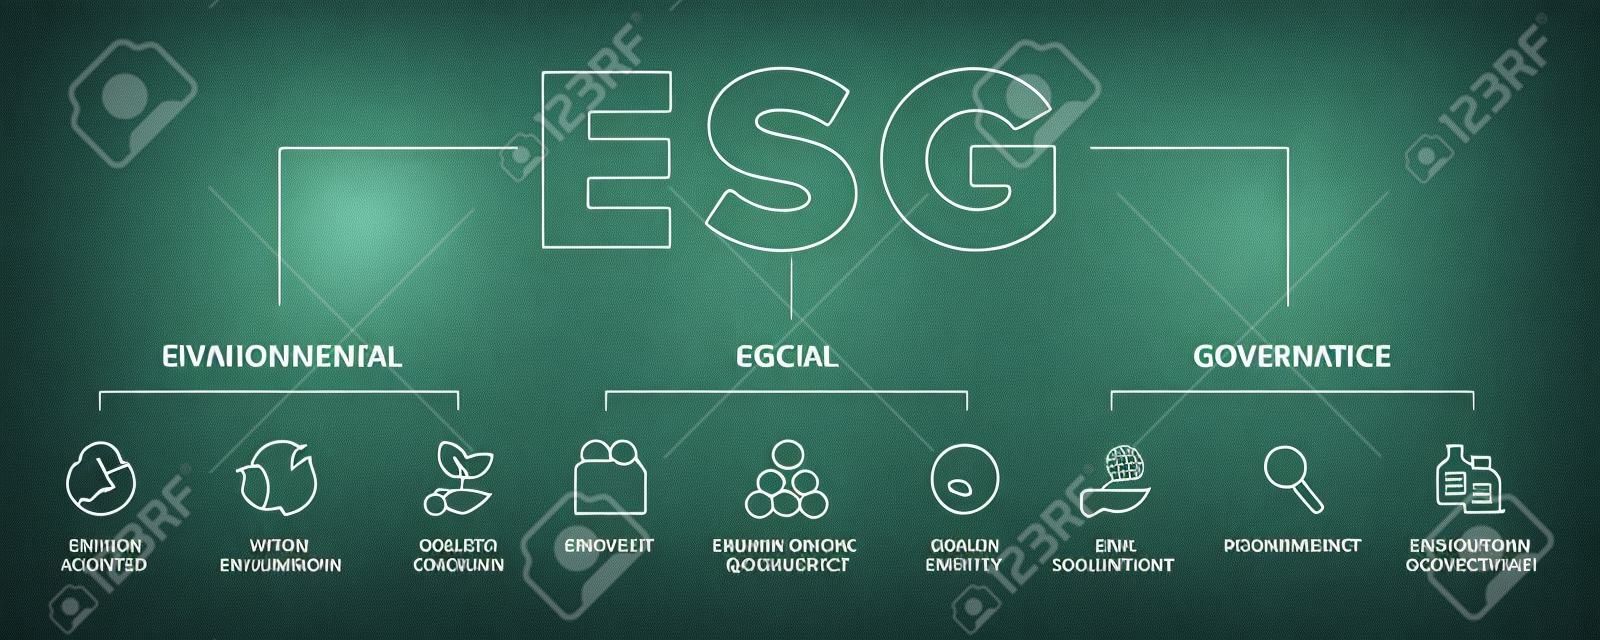 ESG - Ensemble d'icônes vectorielles de concept environnemental, social et de gouvernance.